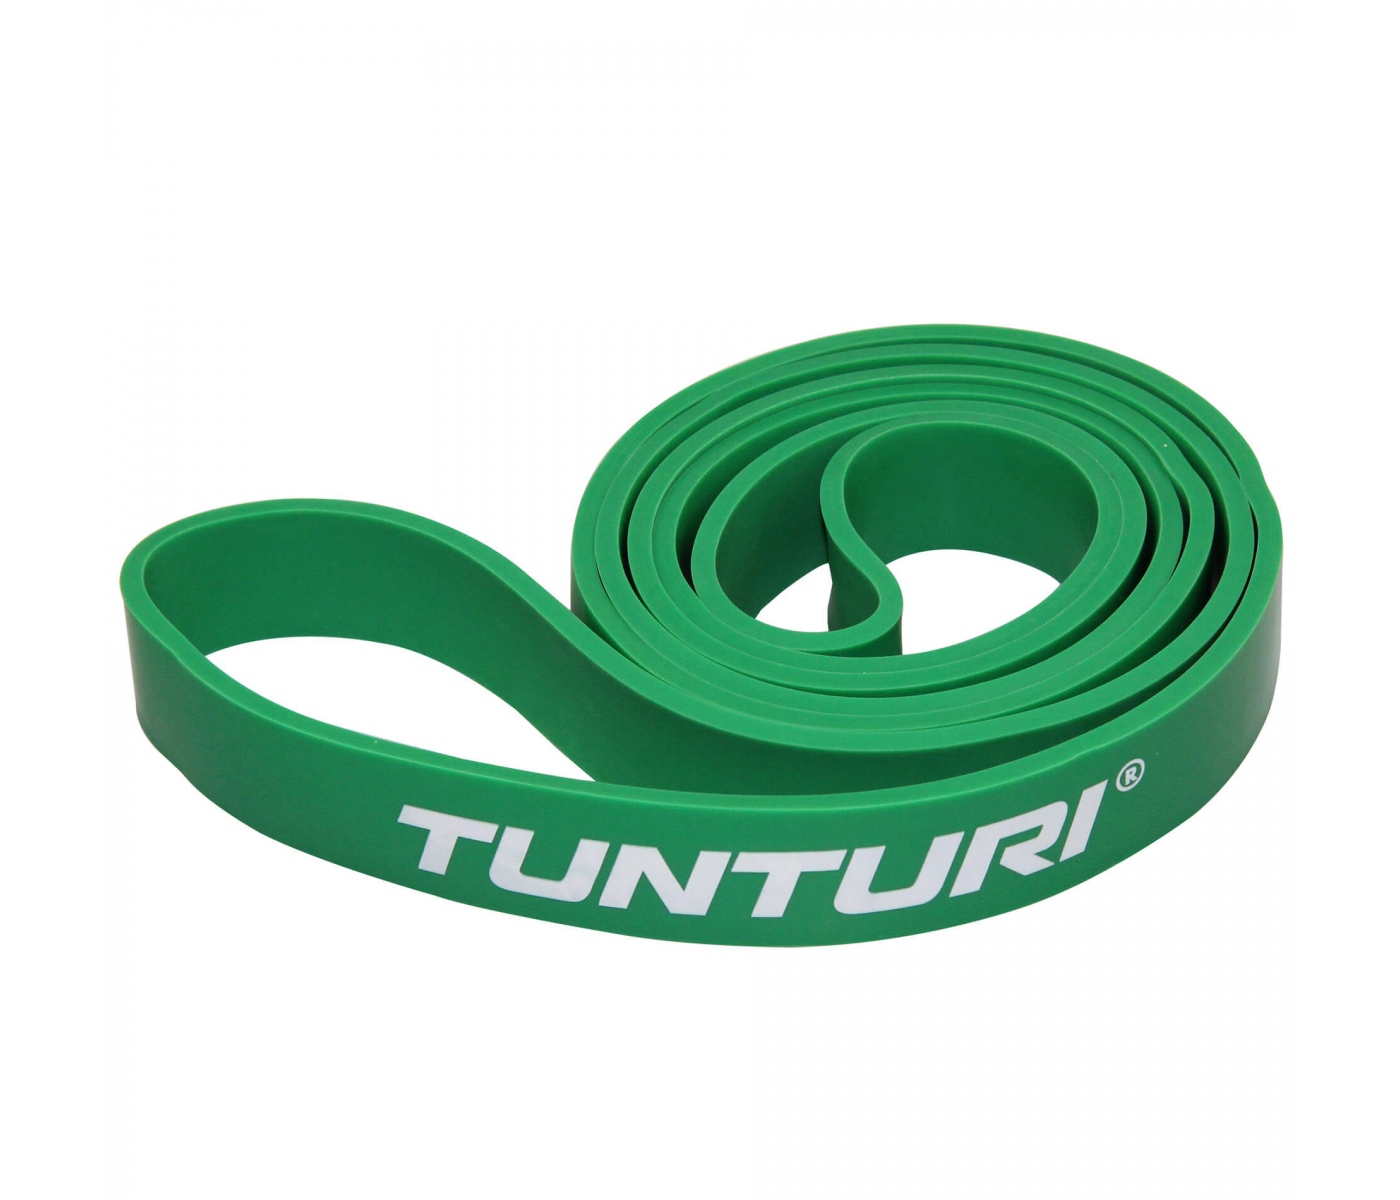 Brug Tunturi Power Band Medium til en forbedret oplevelse